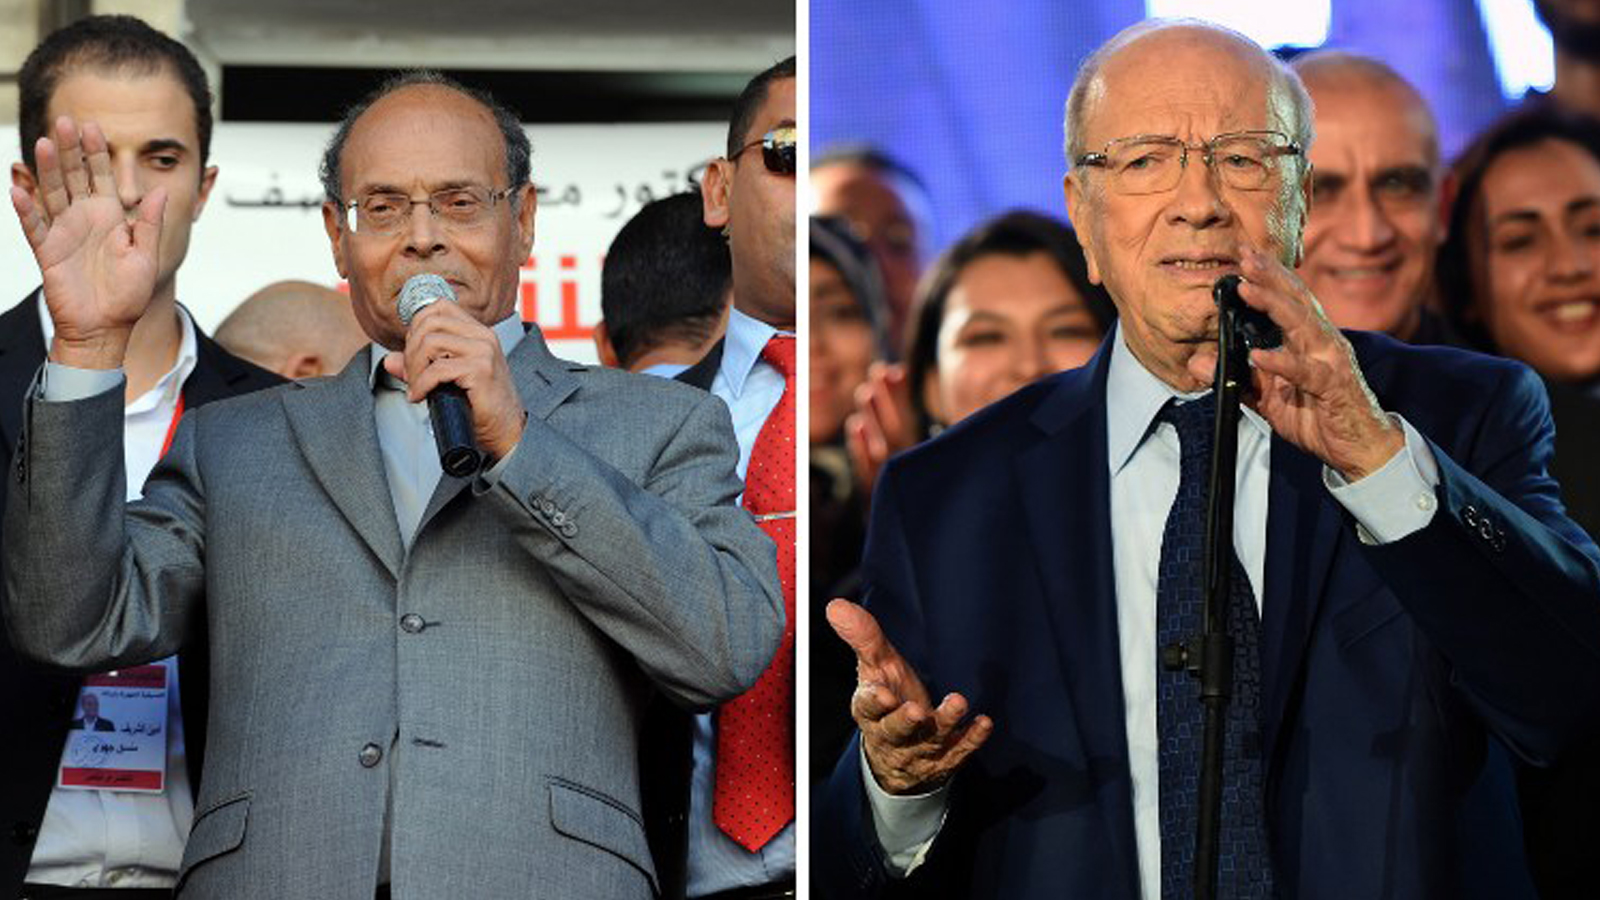 وسطيو تونس في صحوة متأخرة لتشكيل جبهة سياسية موحدة